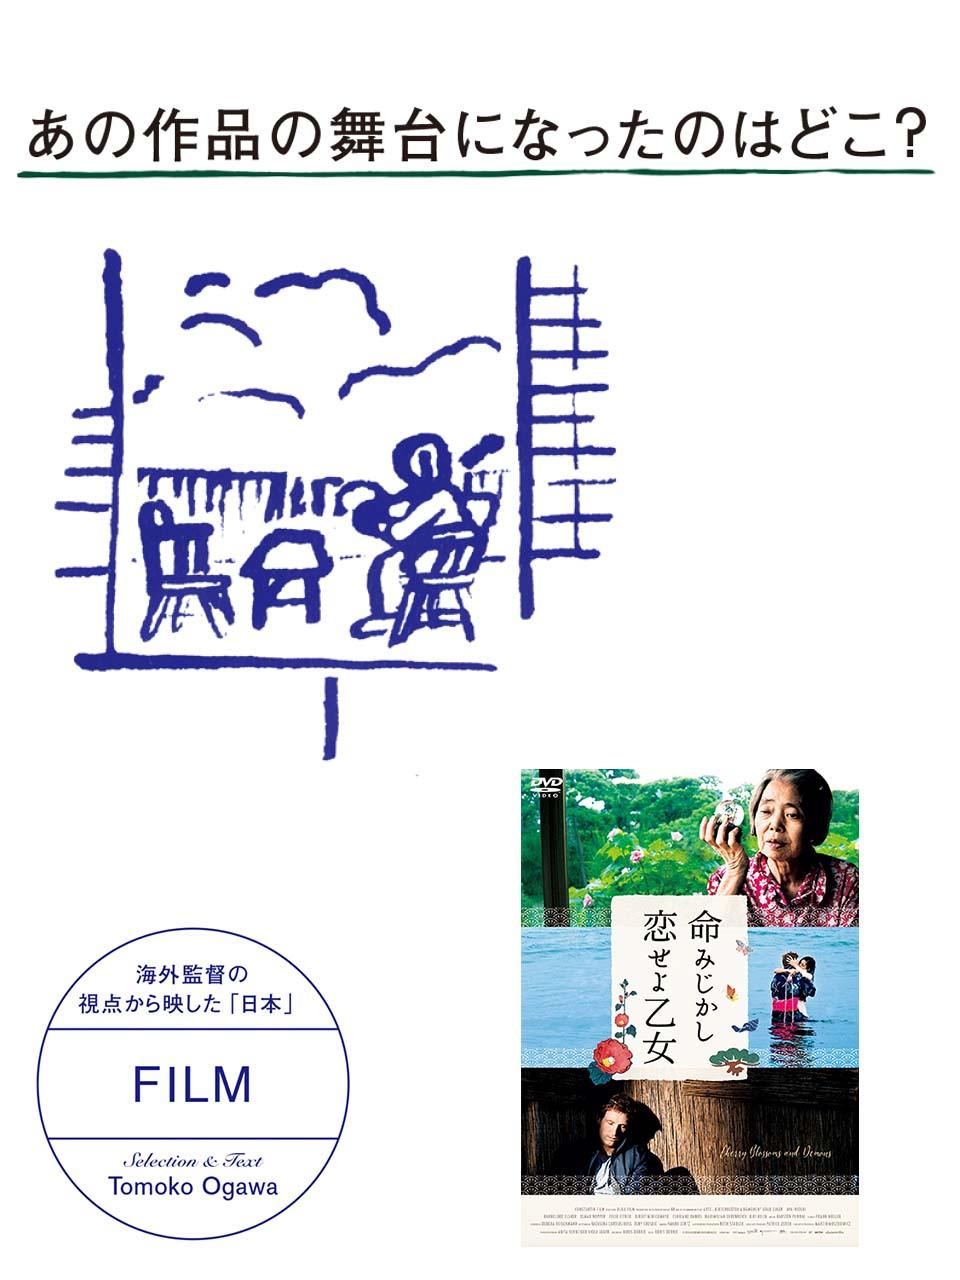 海外監督の視点から映した「日本」。あの映画の舞台になったのは？『命みじかし、恋せよ乙女』編